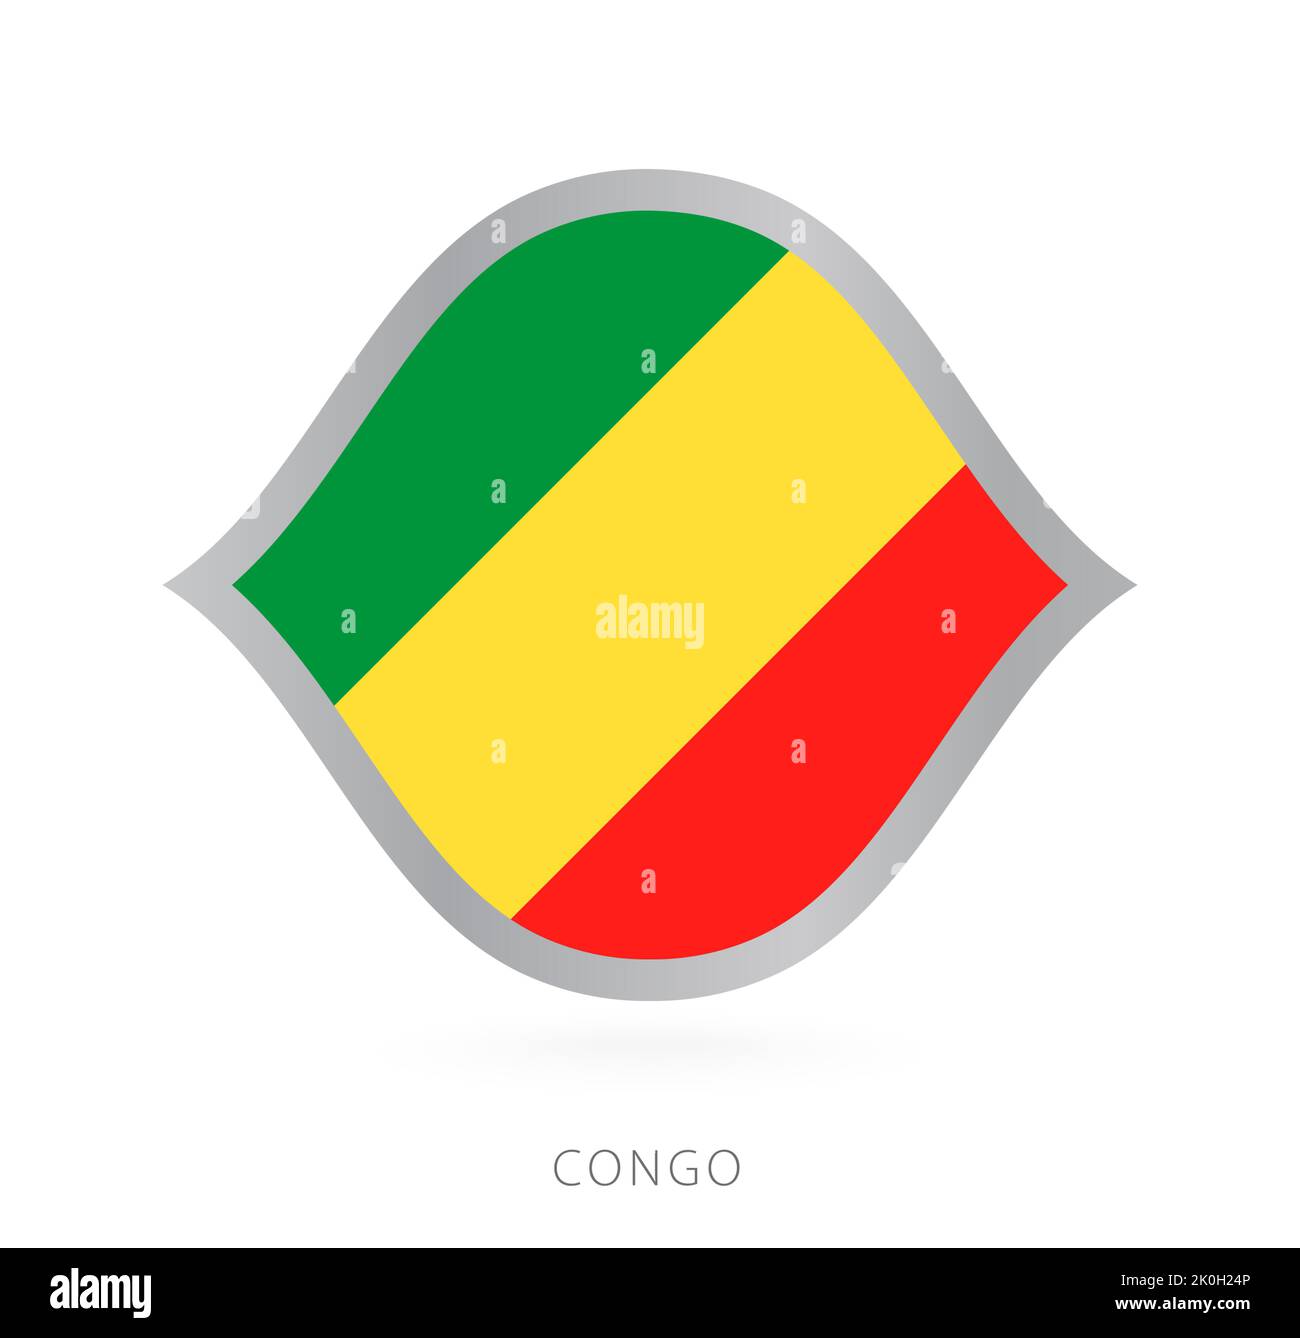 Drapeau de l'équipe nationale du Congo avec style pour les compétitions internationales de basket-ball. Signe vectoriel. Illustration de Vecteur